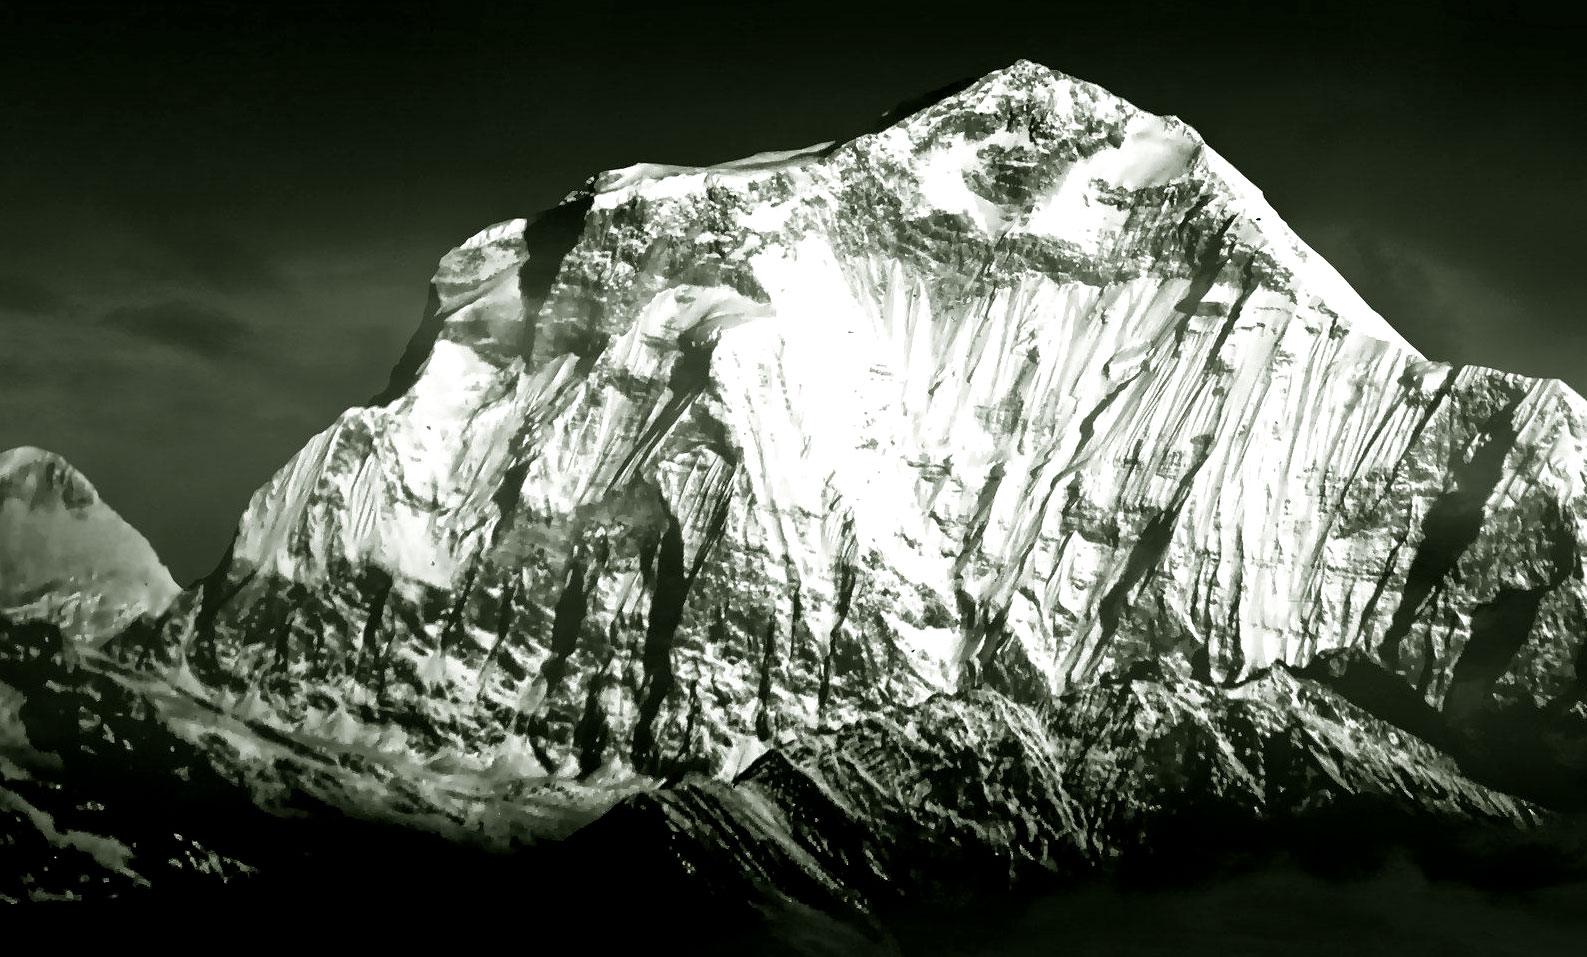 Mount Dhaulagiri, Nepal